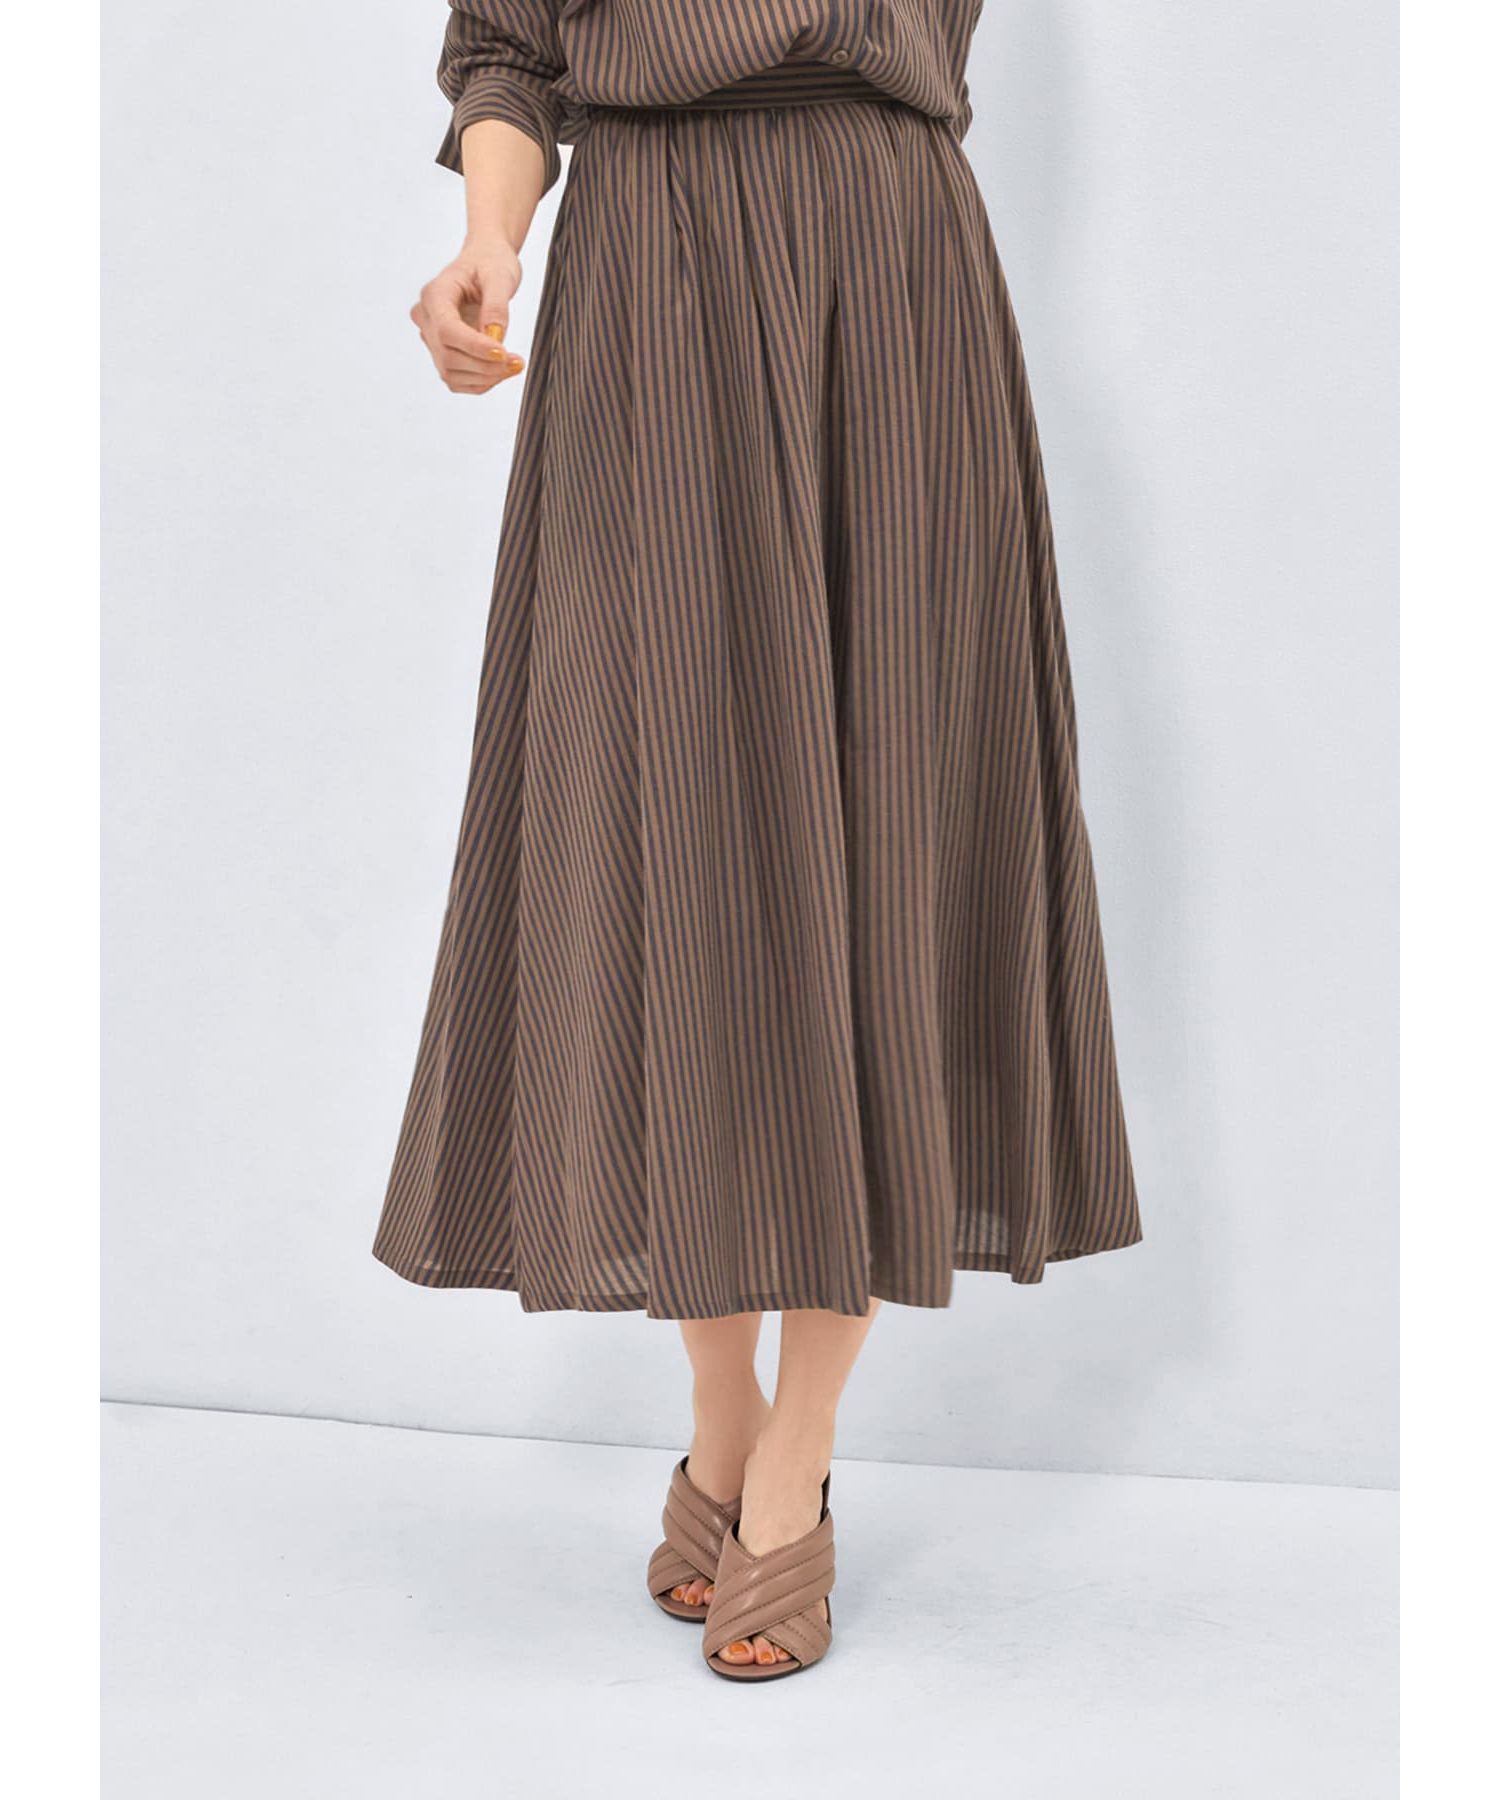 カラーナチュラルストライプ織りスカート|STYLE DELI(スタイルデリ)の